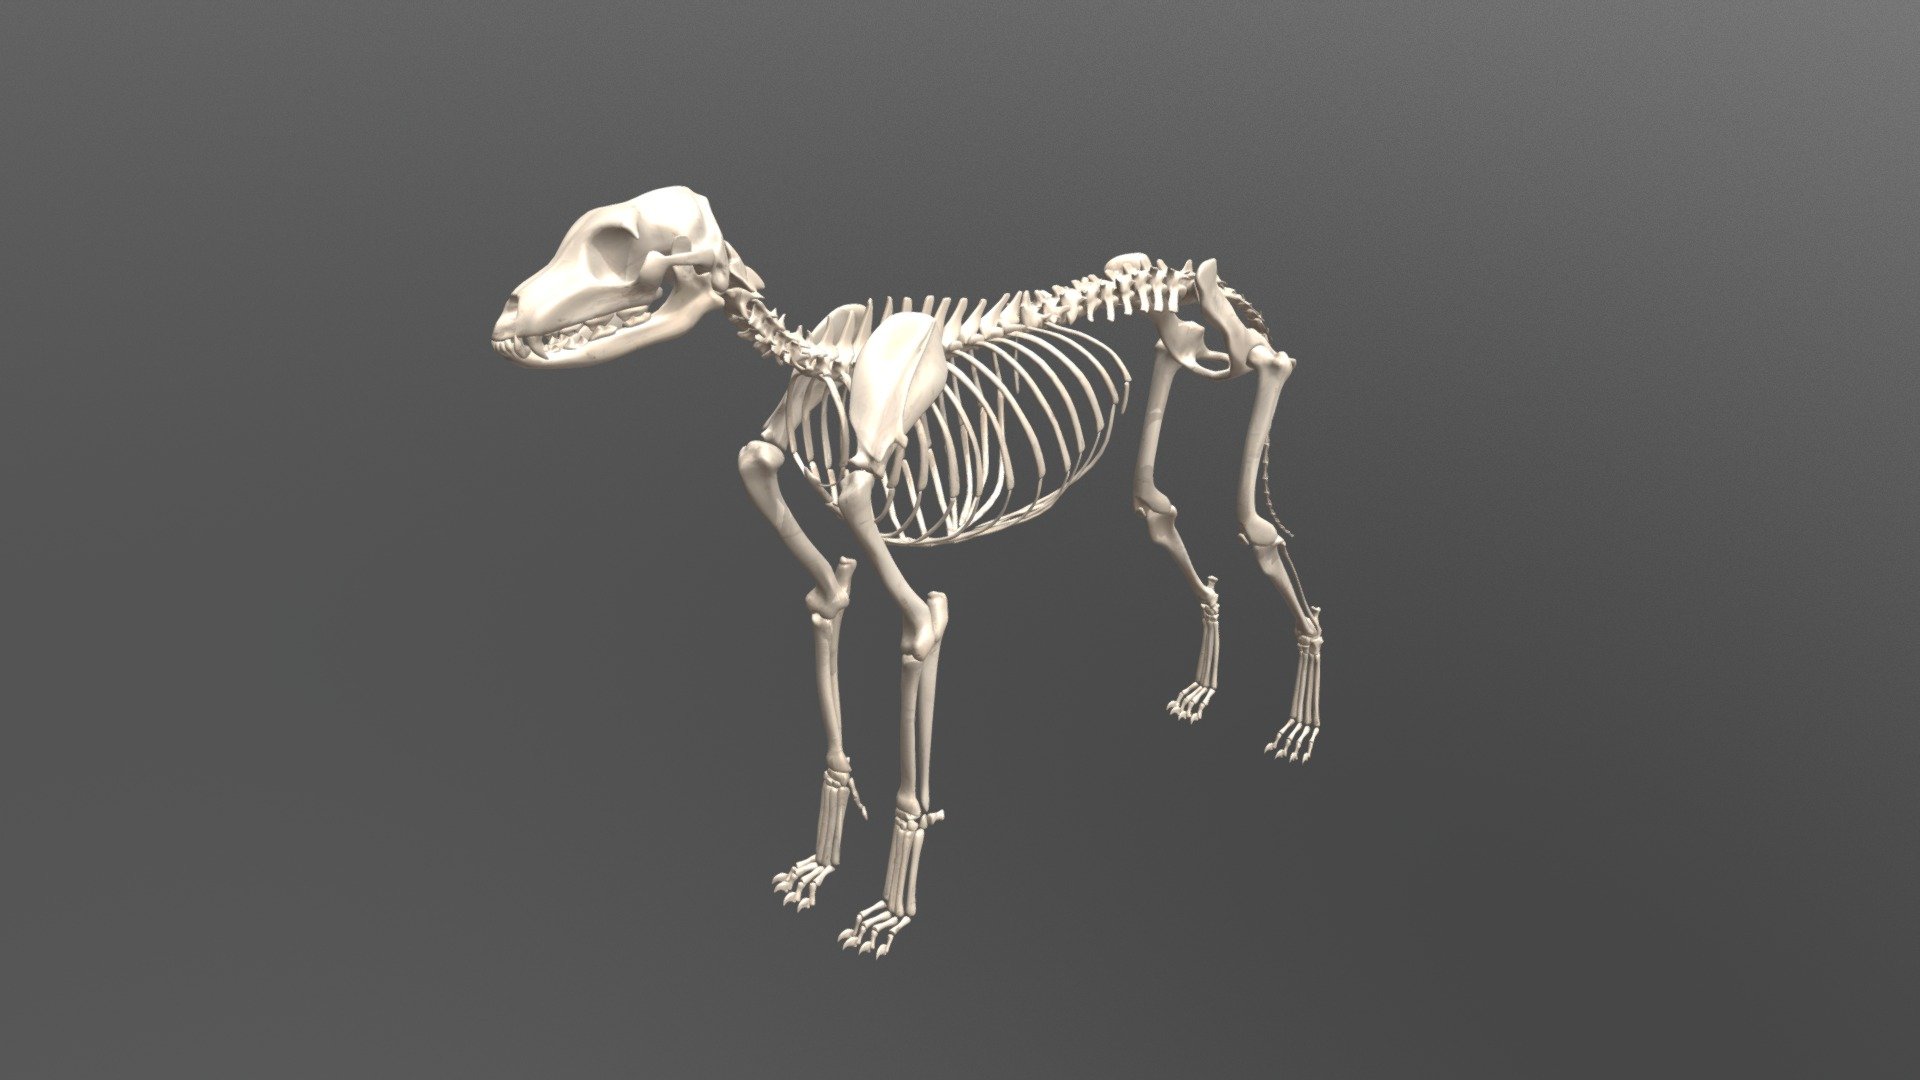 Dog Skeleton - 3D model by karab44 (@karab44) [cf24cbe] - Sketchfab